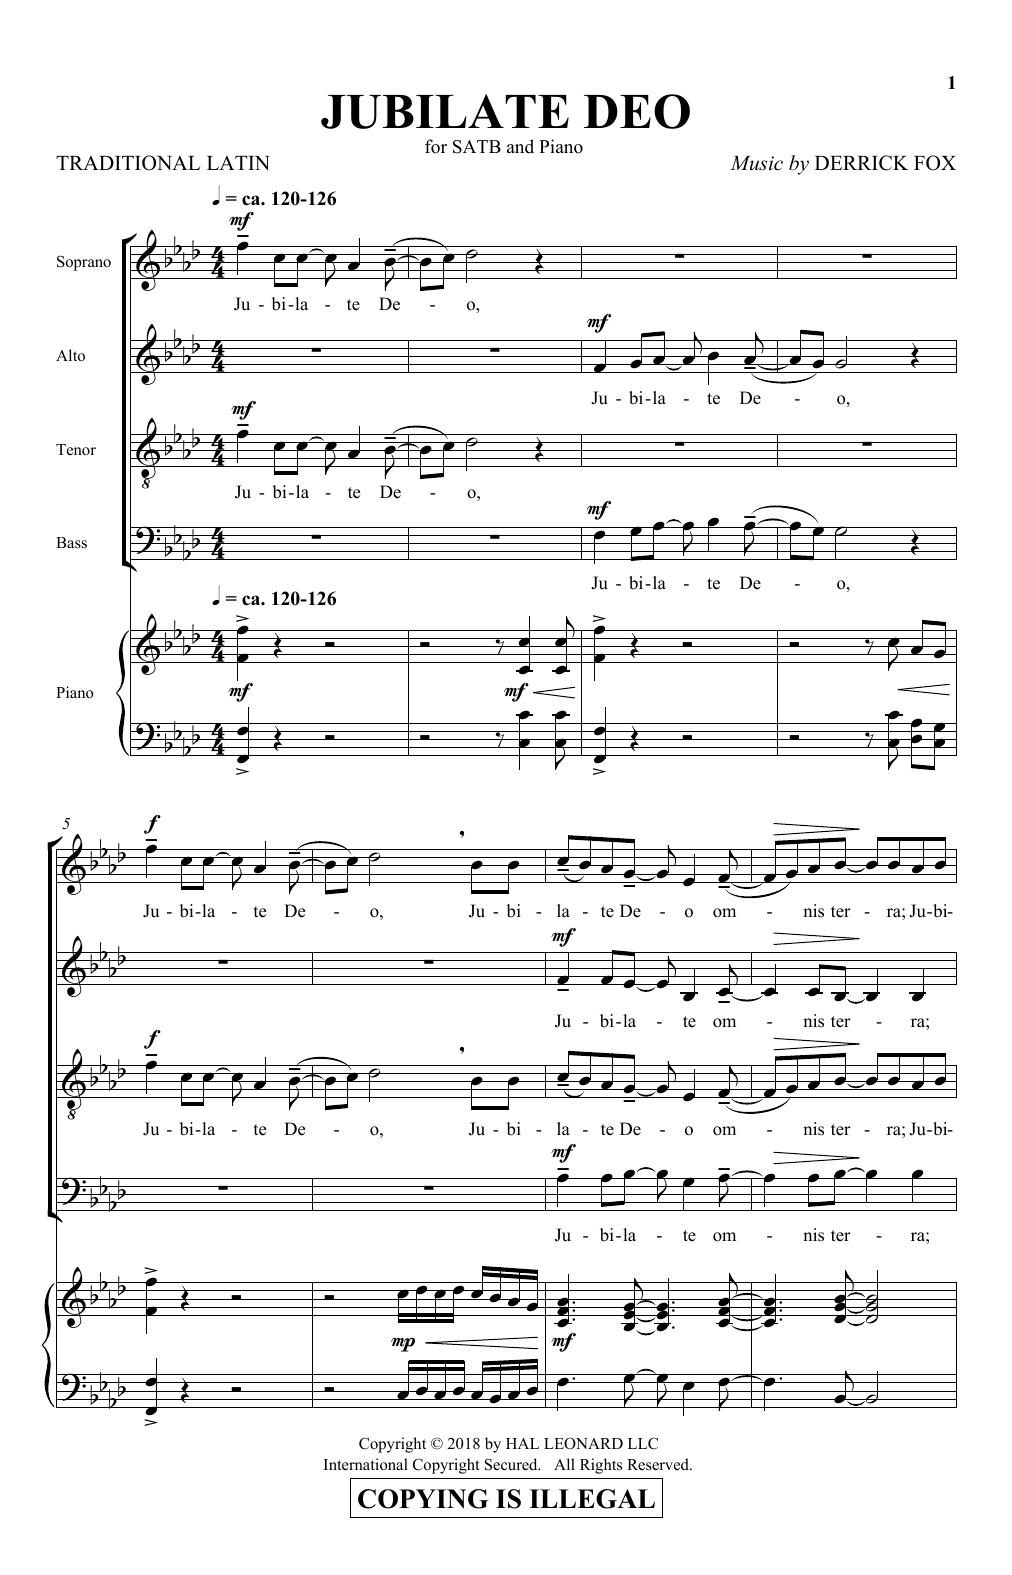 Jubilate Deo (SATB Choir) von Derrick Fox